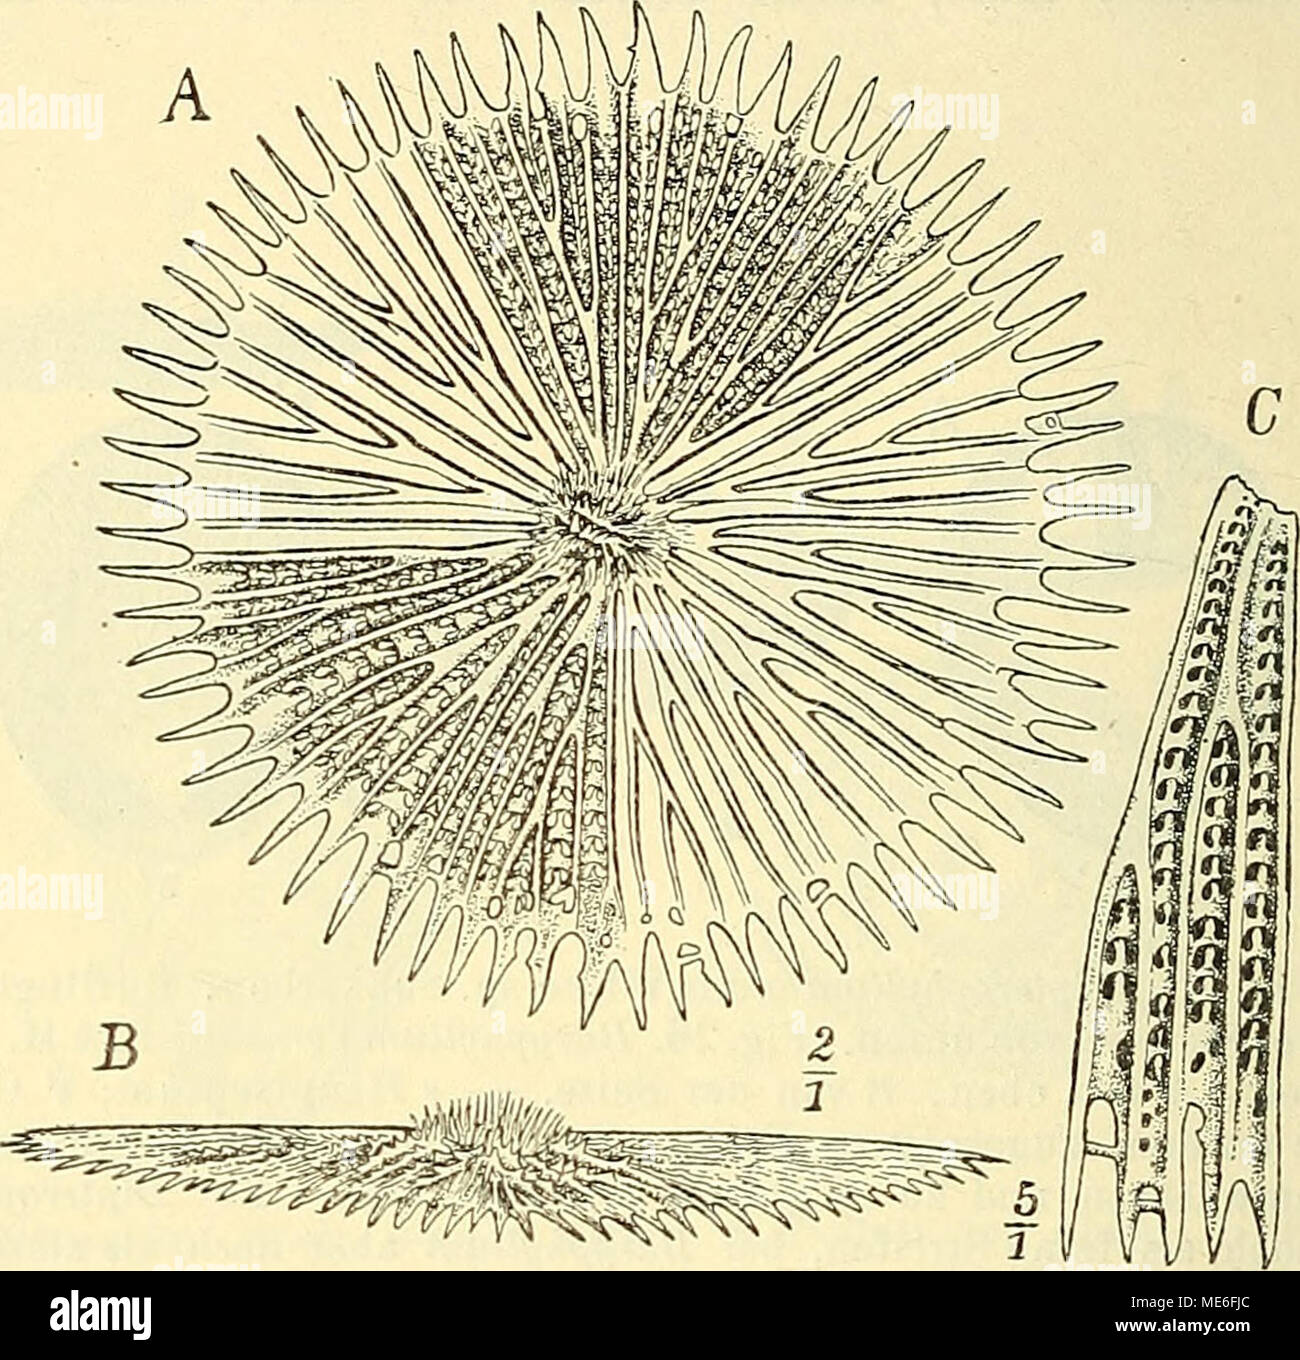 . Die geologischen grundlagen der abstammungslehre . Fig. 27. StephanophyUia imperialis Mich. Miozän. Siebenbürgen. Skelett von oben. Die Septen bilden höbe Kämme, die durch quere Platten miteinander verbunden sind. Die poröse Beschaffenheit ist nicht er- kennbar. (Aus Steinmann- Doederxein: El. d. Pal.) Fig. 28. Leptopenus discus Mos. Südl. Indischer Ozean. (Nach Moselet, Chall. Rep.) Adas scheibenförmige Skelett von oben; die Einzelheiten nur in zwei Sektoren ausgeführt. B dasselbe von der Seite. C ein Stück stärker vergrößert, von oben. Das Skelett besteht aus einer äußerst dünnen, siebarti Stock Photo